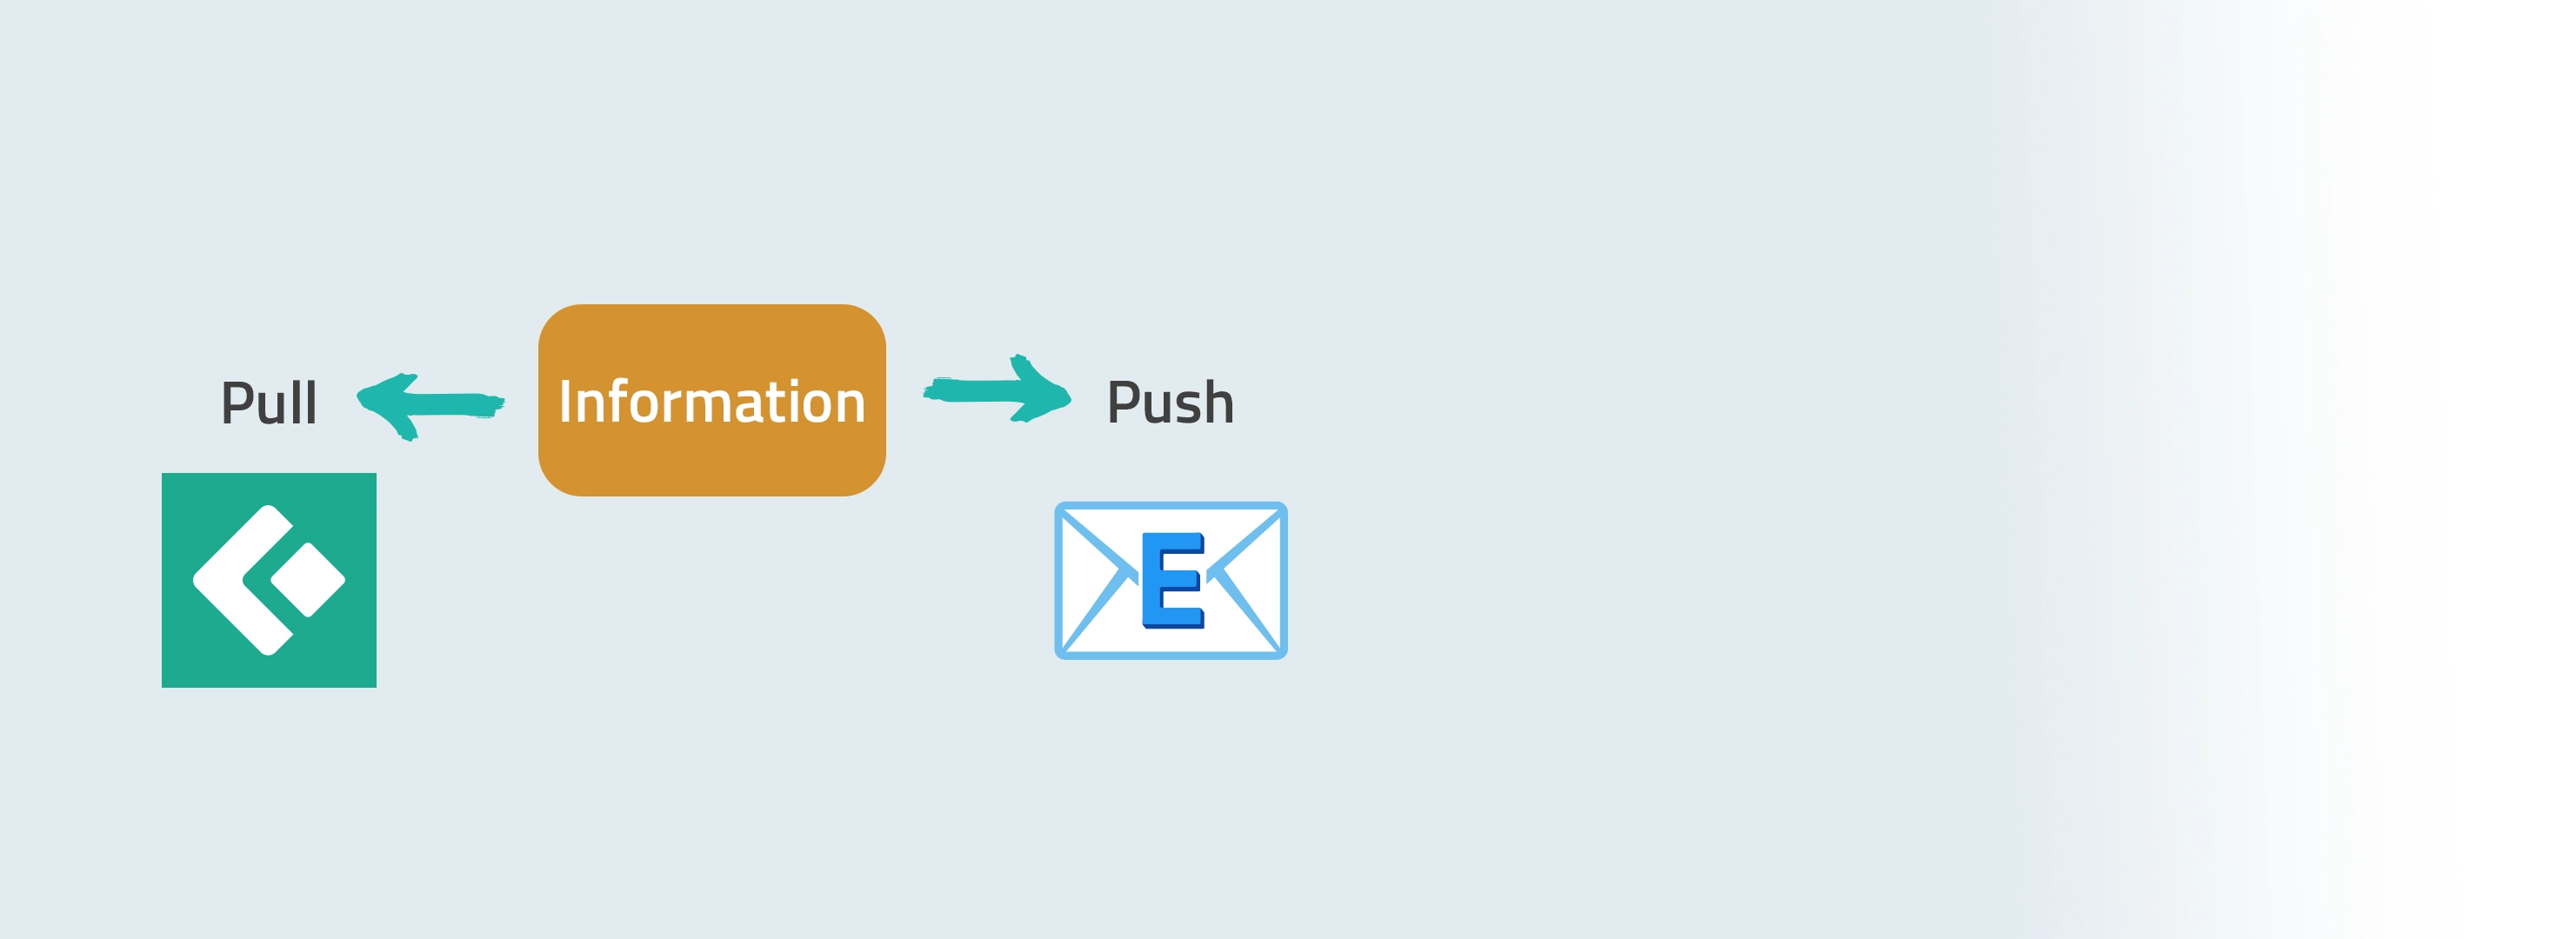 Zwei Pfeile mit Pull und Push, Information steht in der Mitte, Pull mit Connect App Icon, Push mit E-Mail Icon